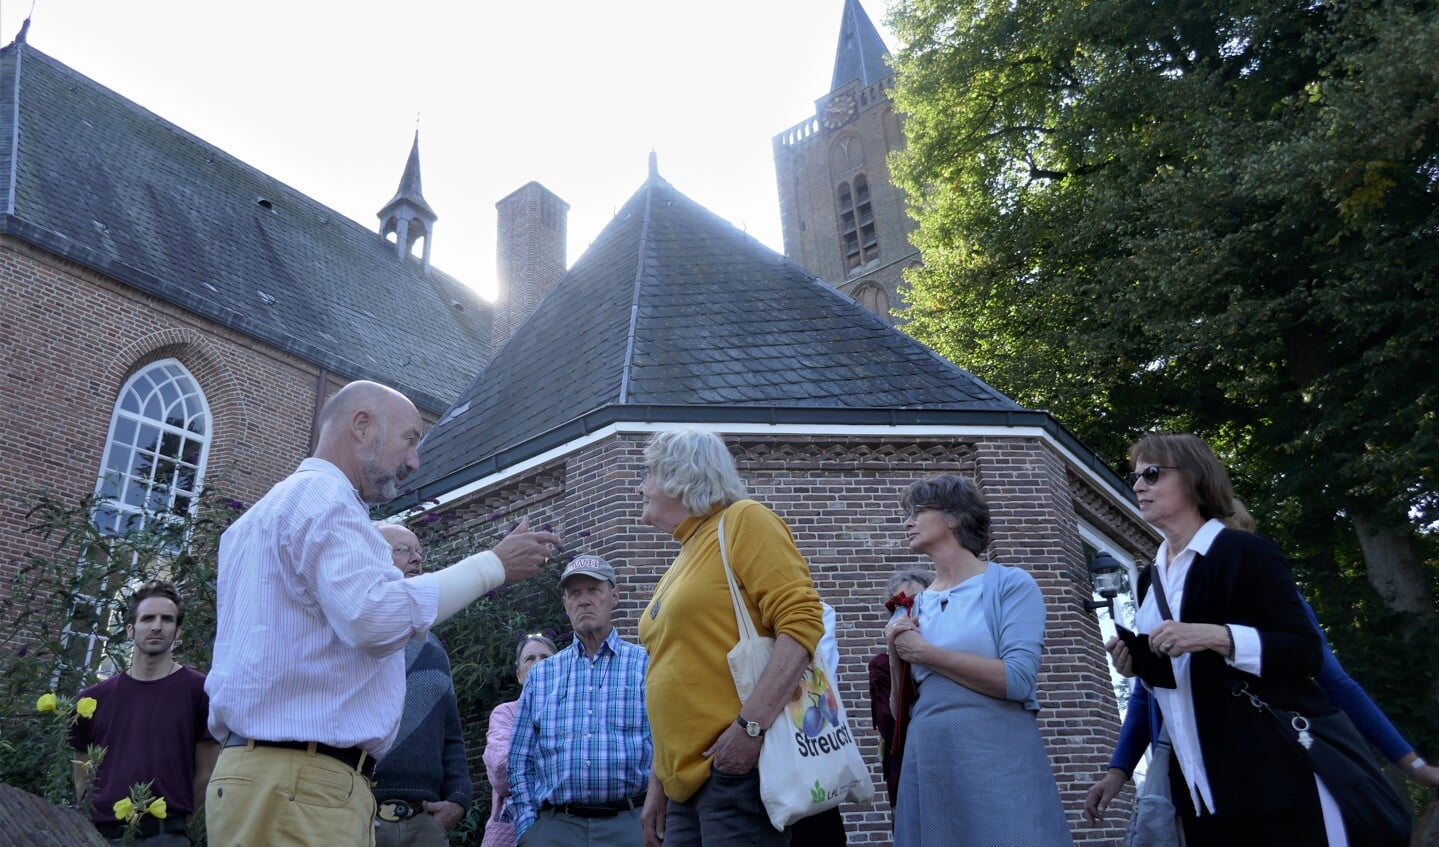 Soester historicus Hans Kruiswijk vertelt rondom de Oude Kerk over haar verhalen sinds 1350.